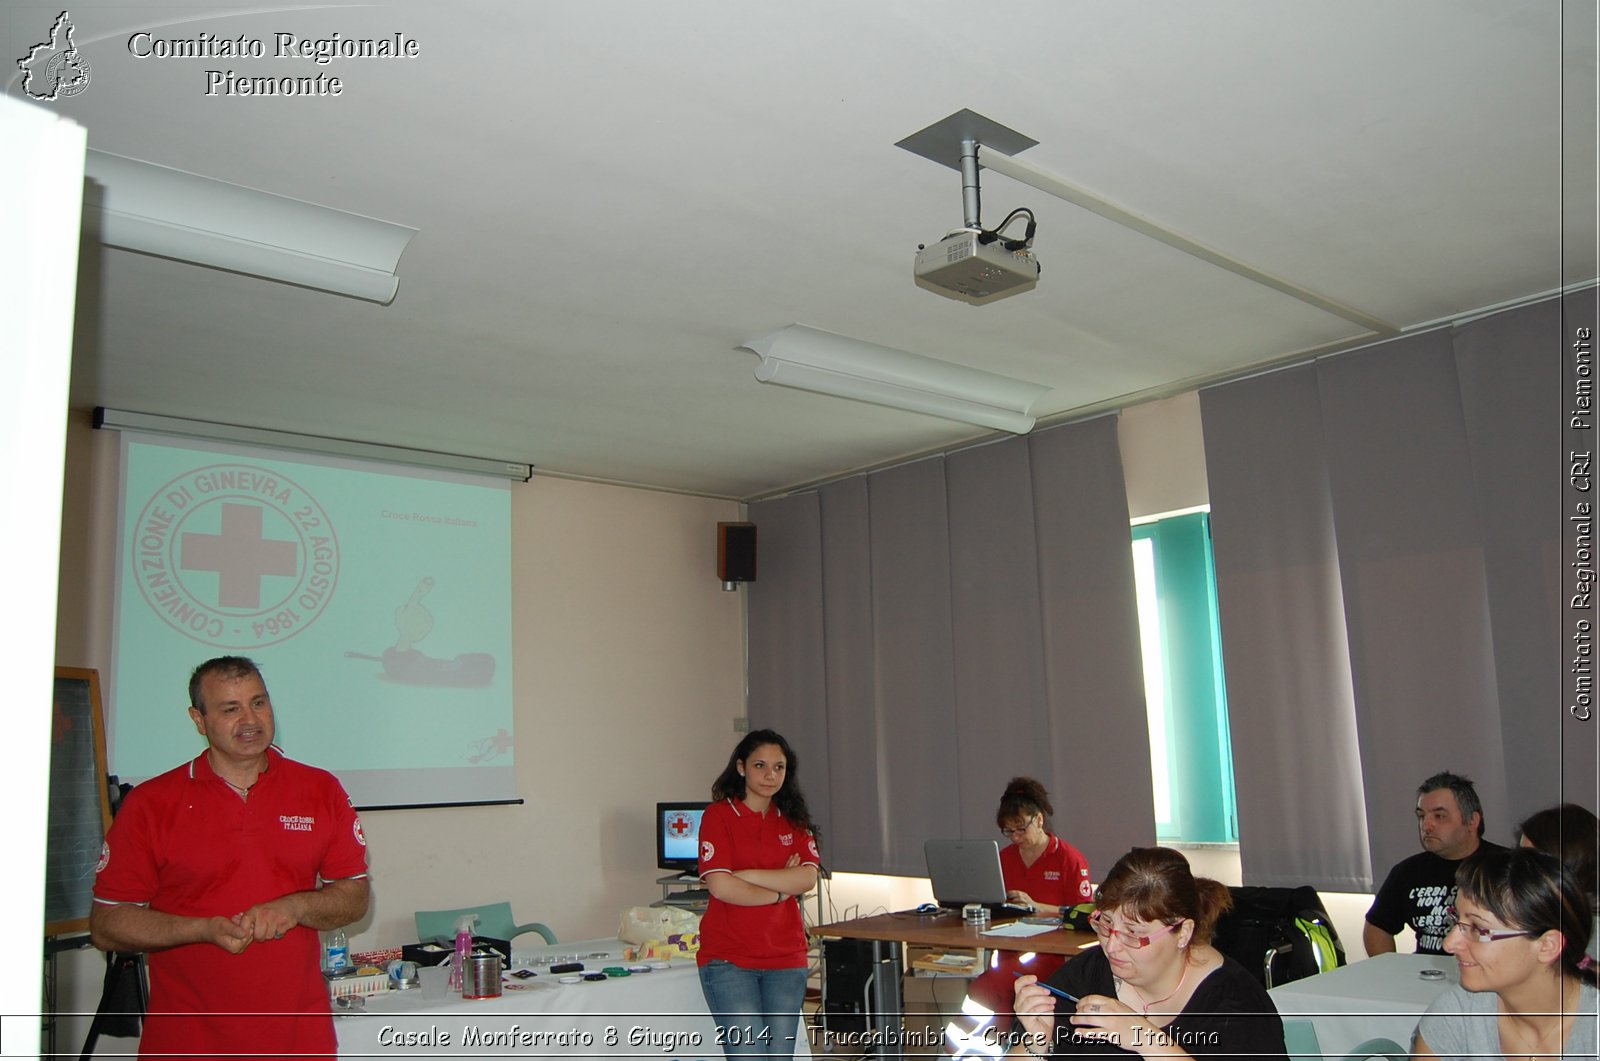 Casale Monferrato 8 Giugno 2014 - Truccabimbi - Croce Rossa Italiana- Comitato Regionale del Piemonte